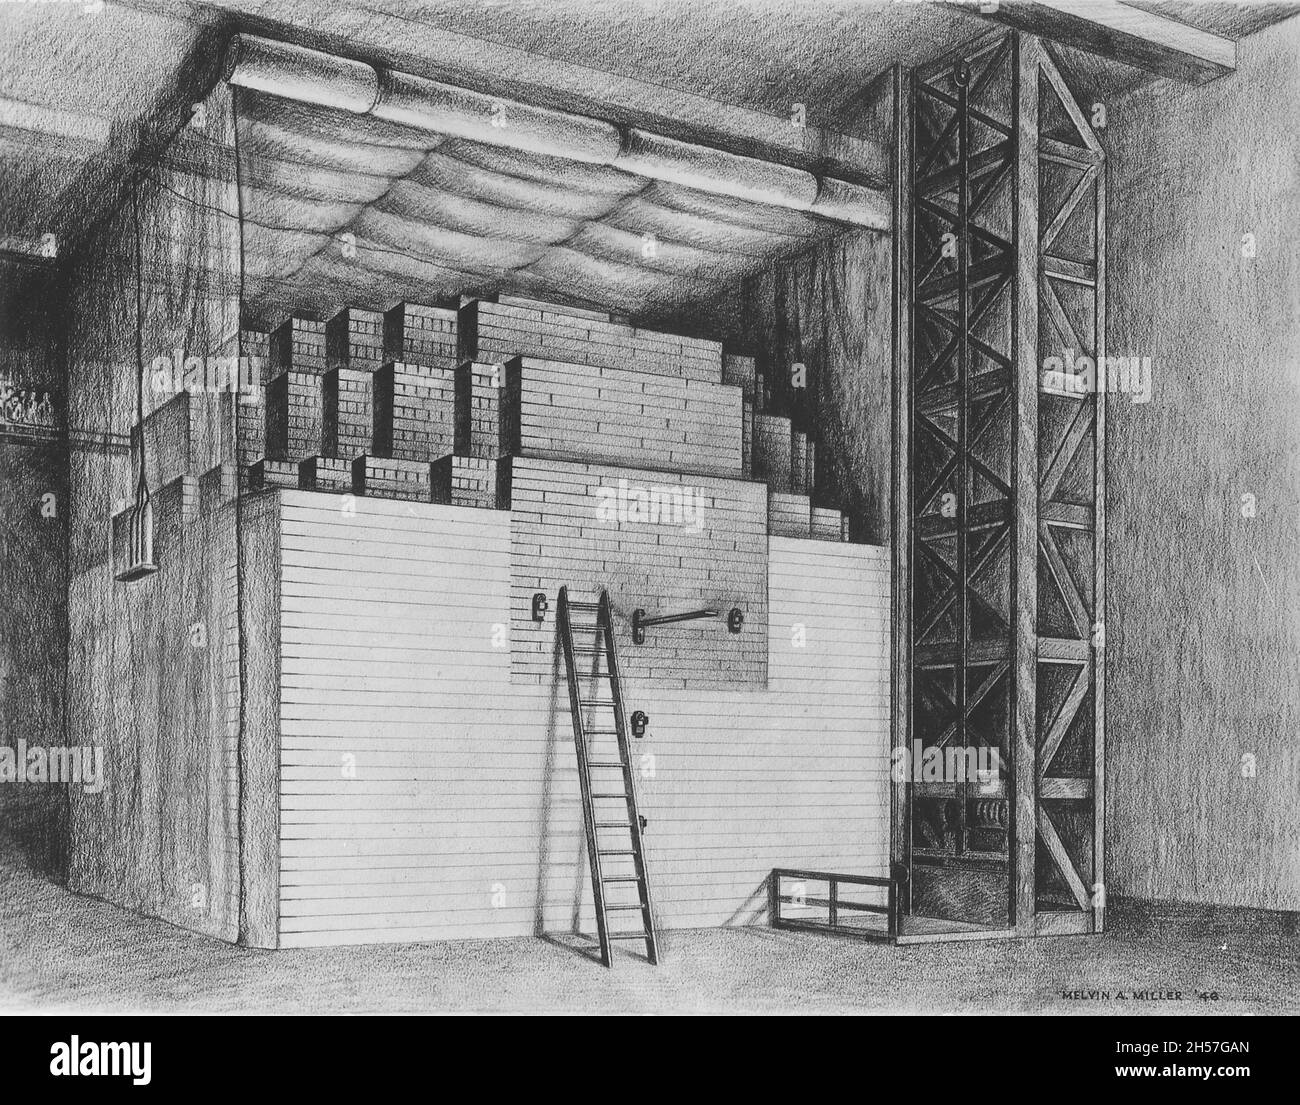 Au cours du projet Manhattan, l'équipe a construit 29 piles exponentielles (réacteurs nucléaires) pour étudier la radioactivité de l'uranium. Banque D'Images